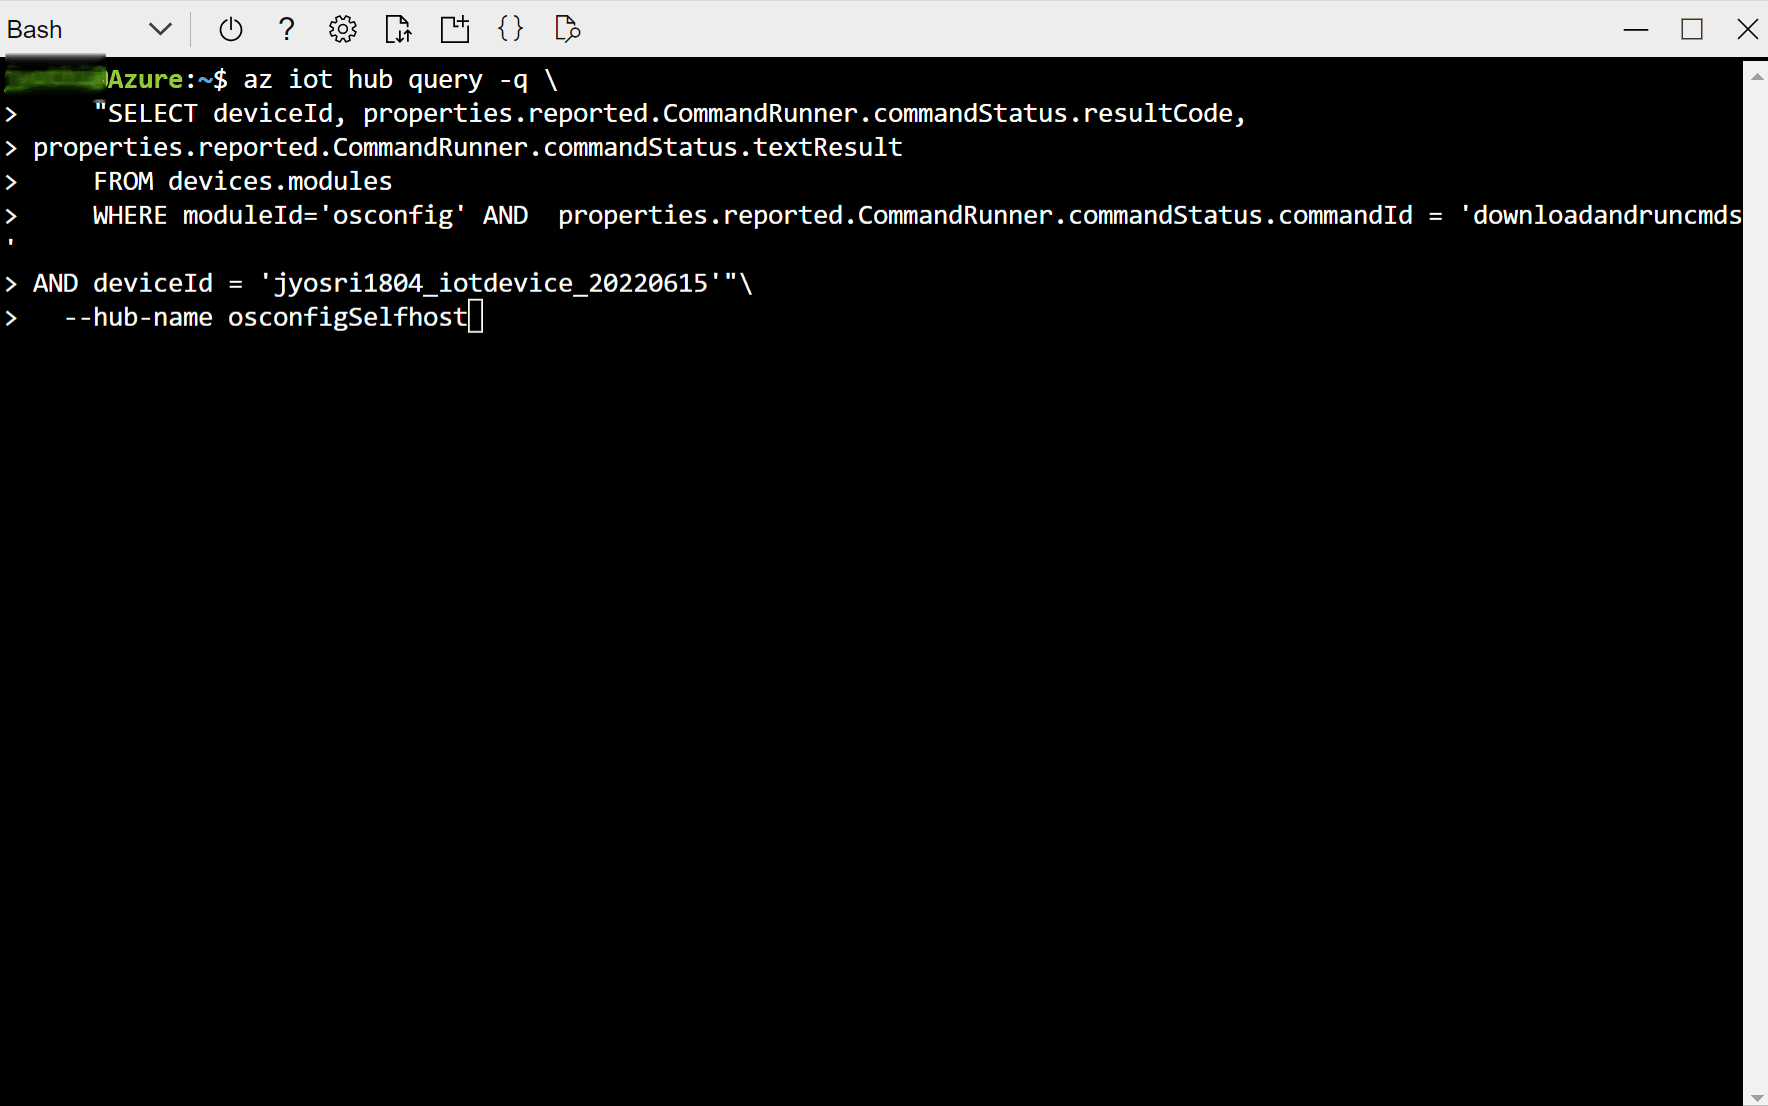 Captura de pantalla que muestra cómo obtener los resultados de una ejecución de script personalizado en un único dispositivo mediante Bash